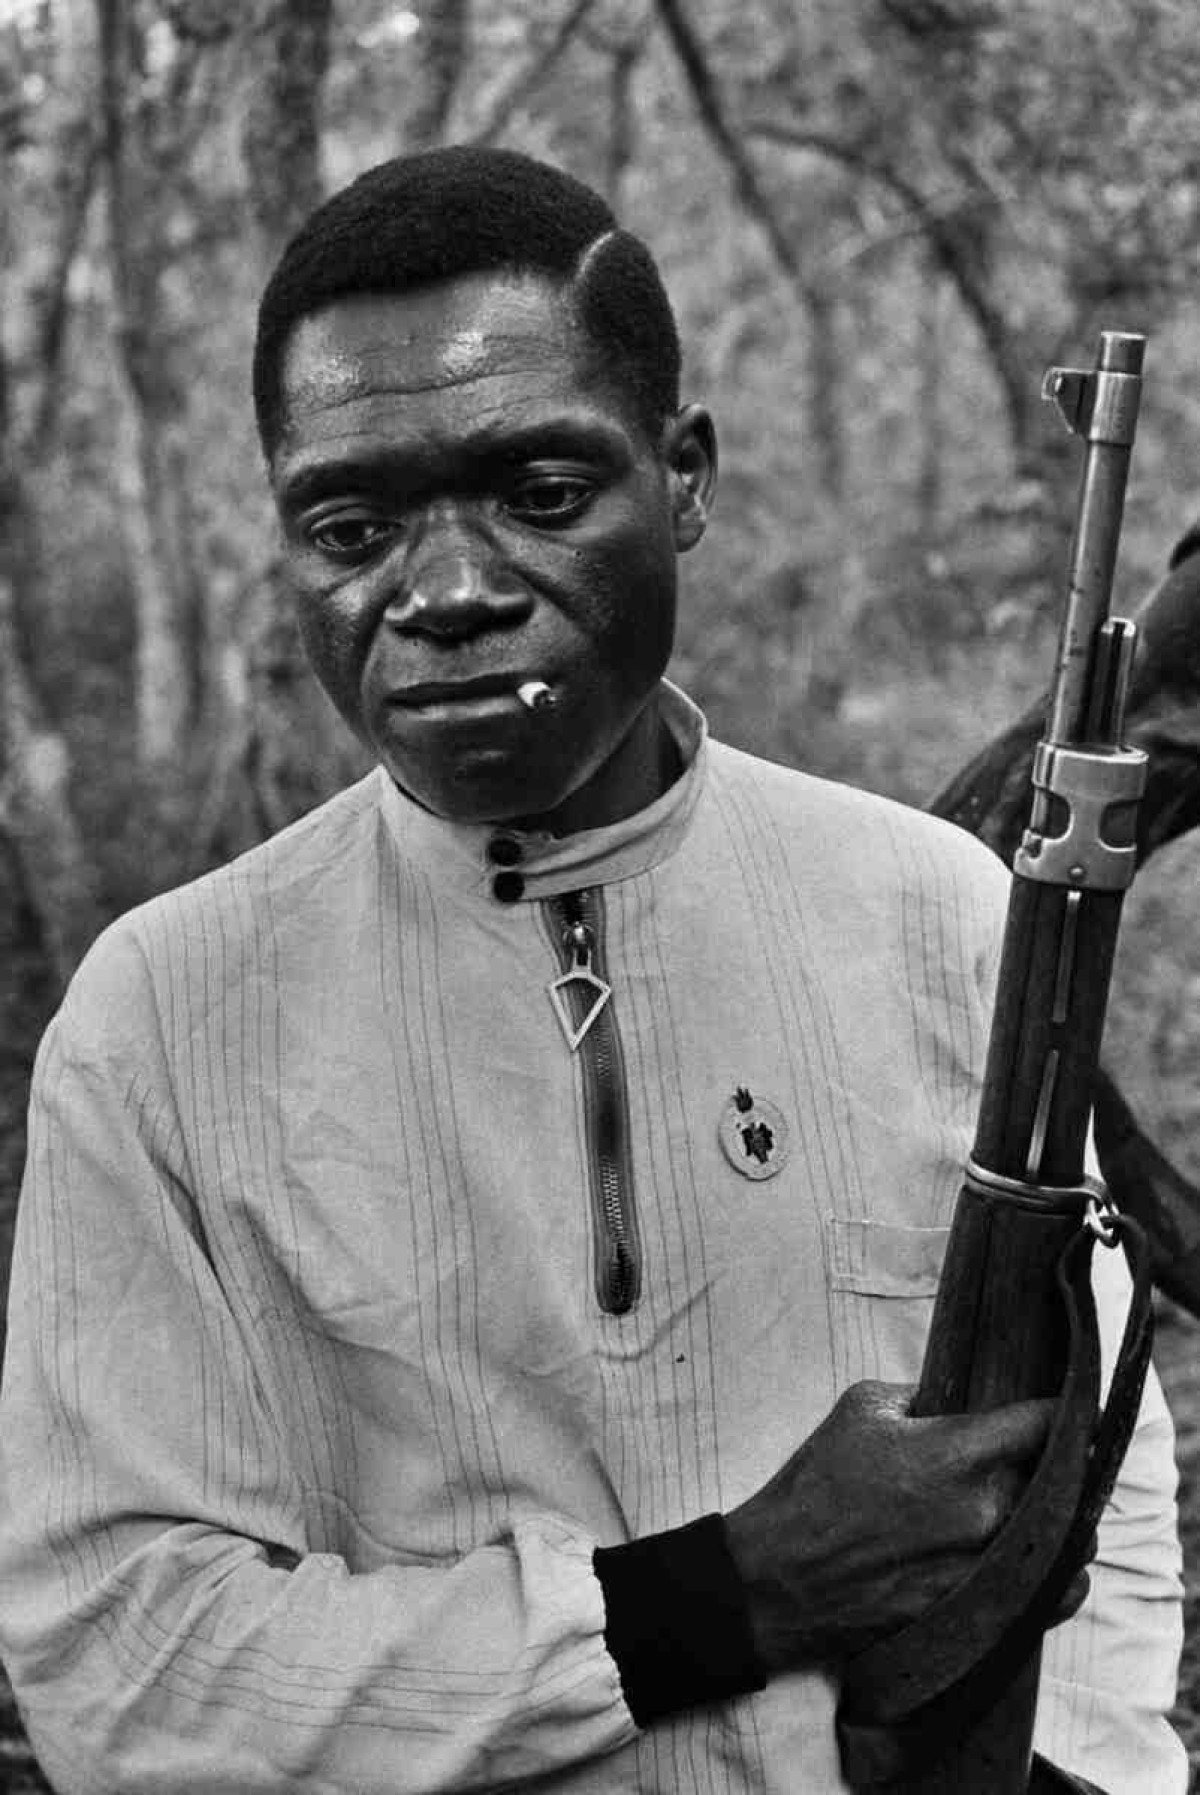 Soldado do Movimento Popular pela Libertação de Angola na zona liberada, em 1972  Exposição Revoluções — – Guiné-Bissau, Angola e Portugal (1969-1974), de Uliano Lucas, no Museu Nacional da República.